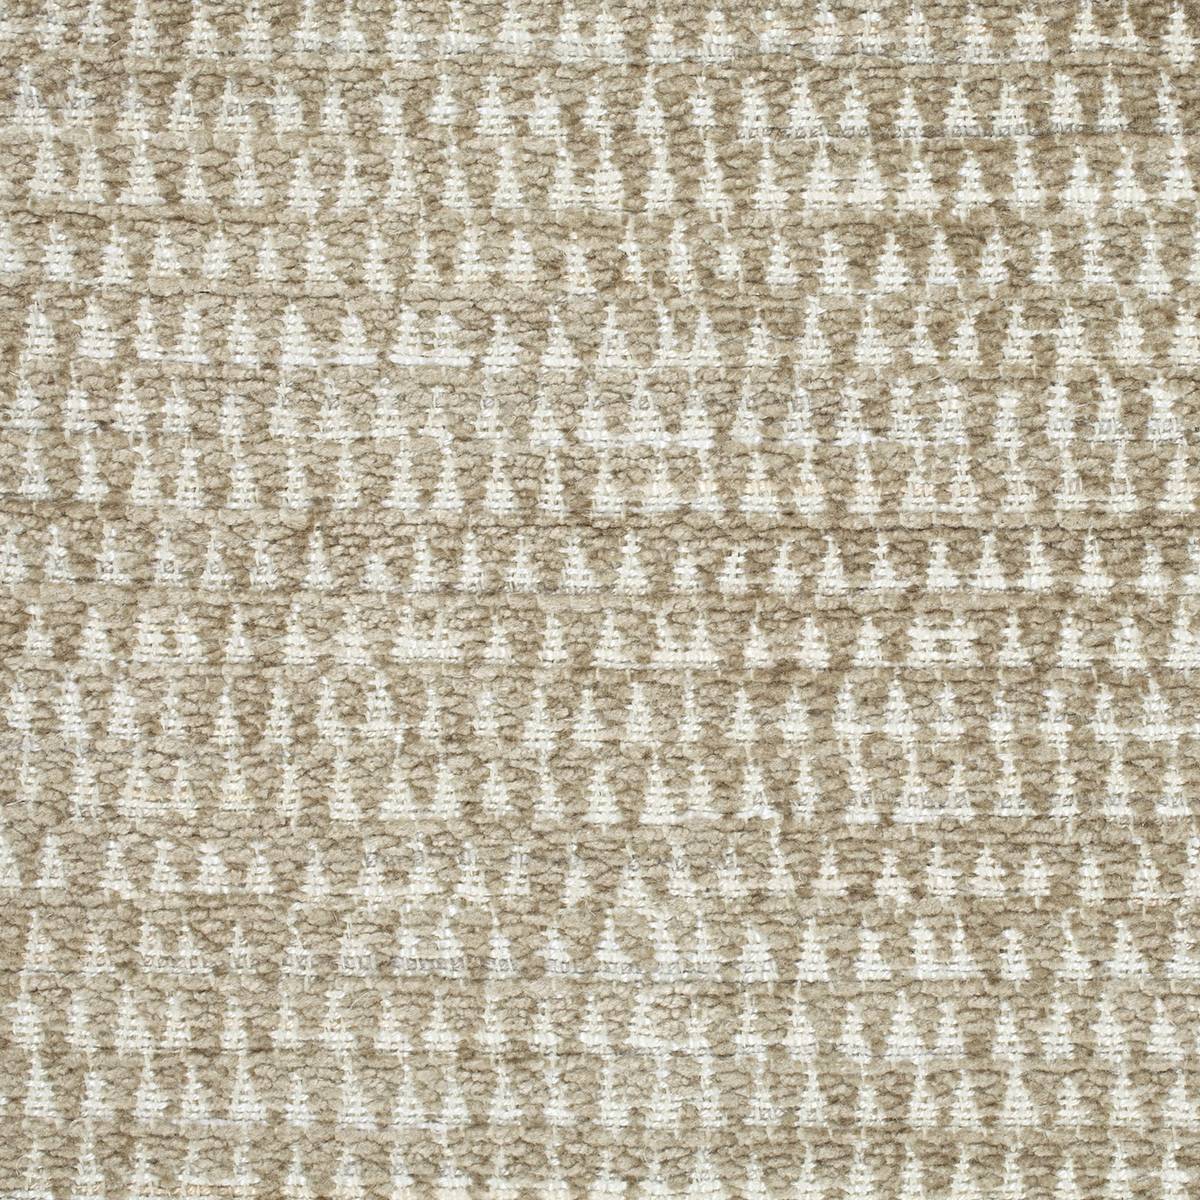 Merrington Pebble Fabric by Zoffany